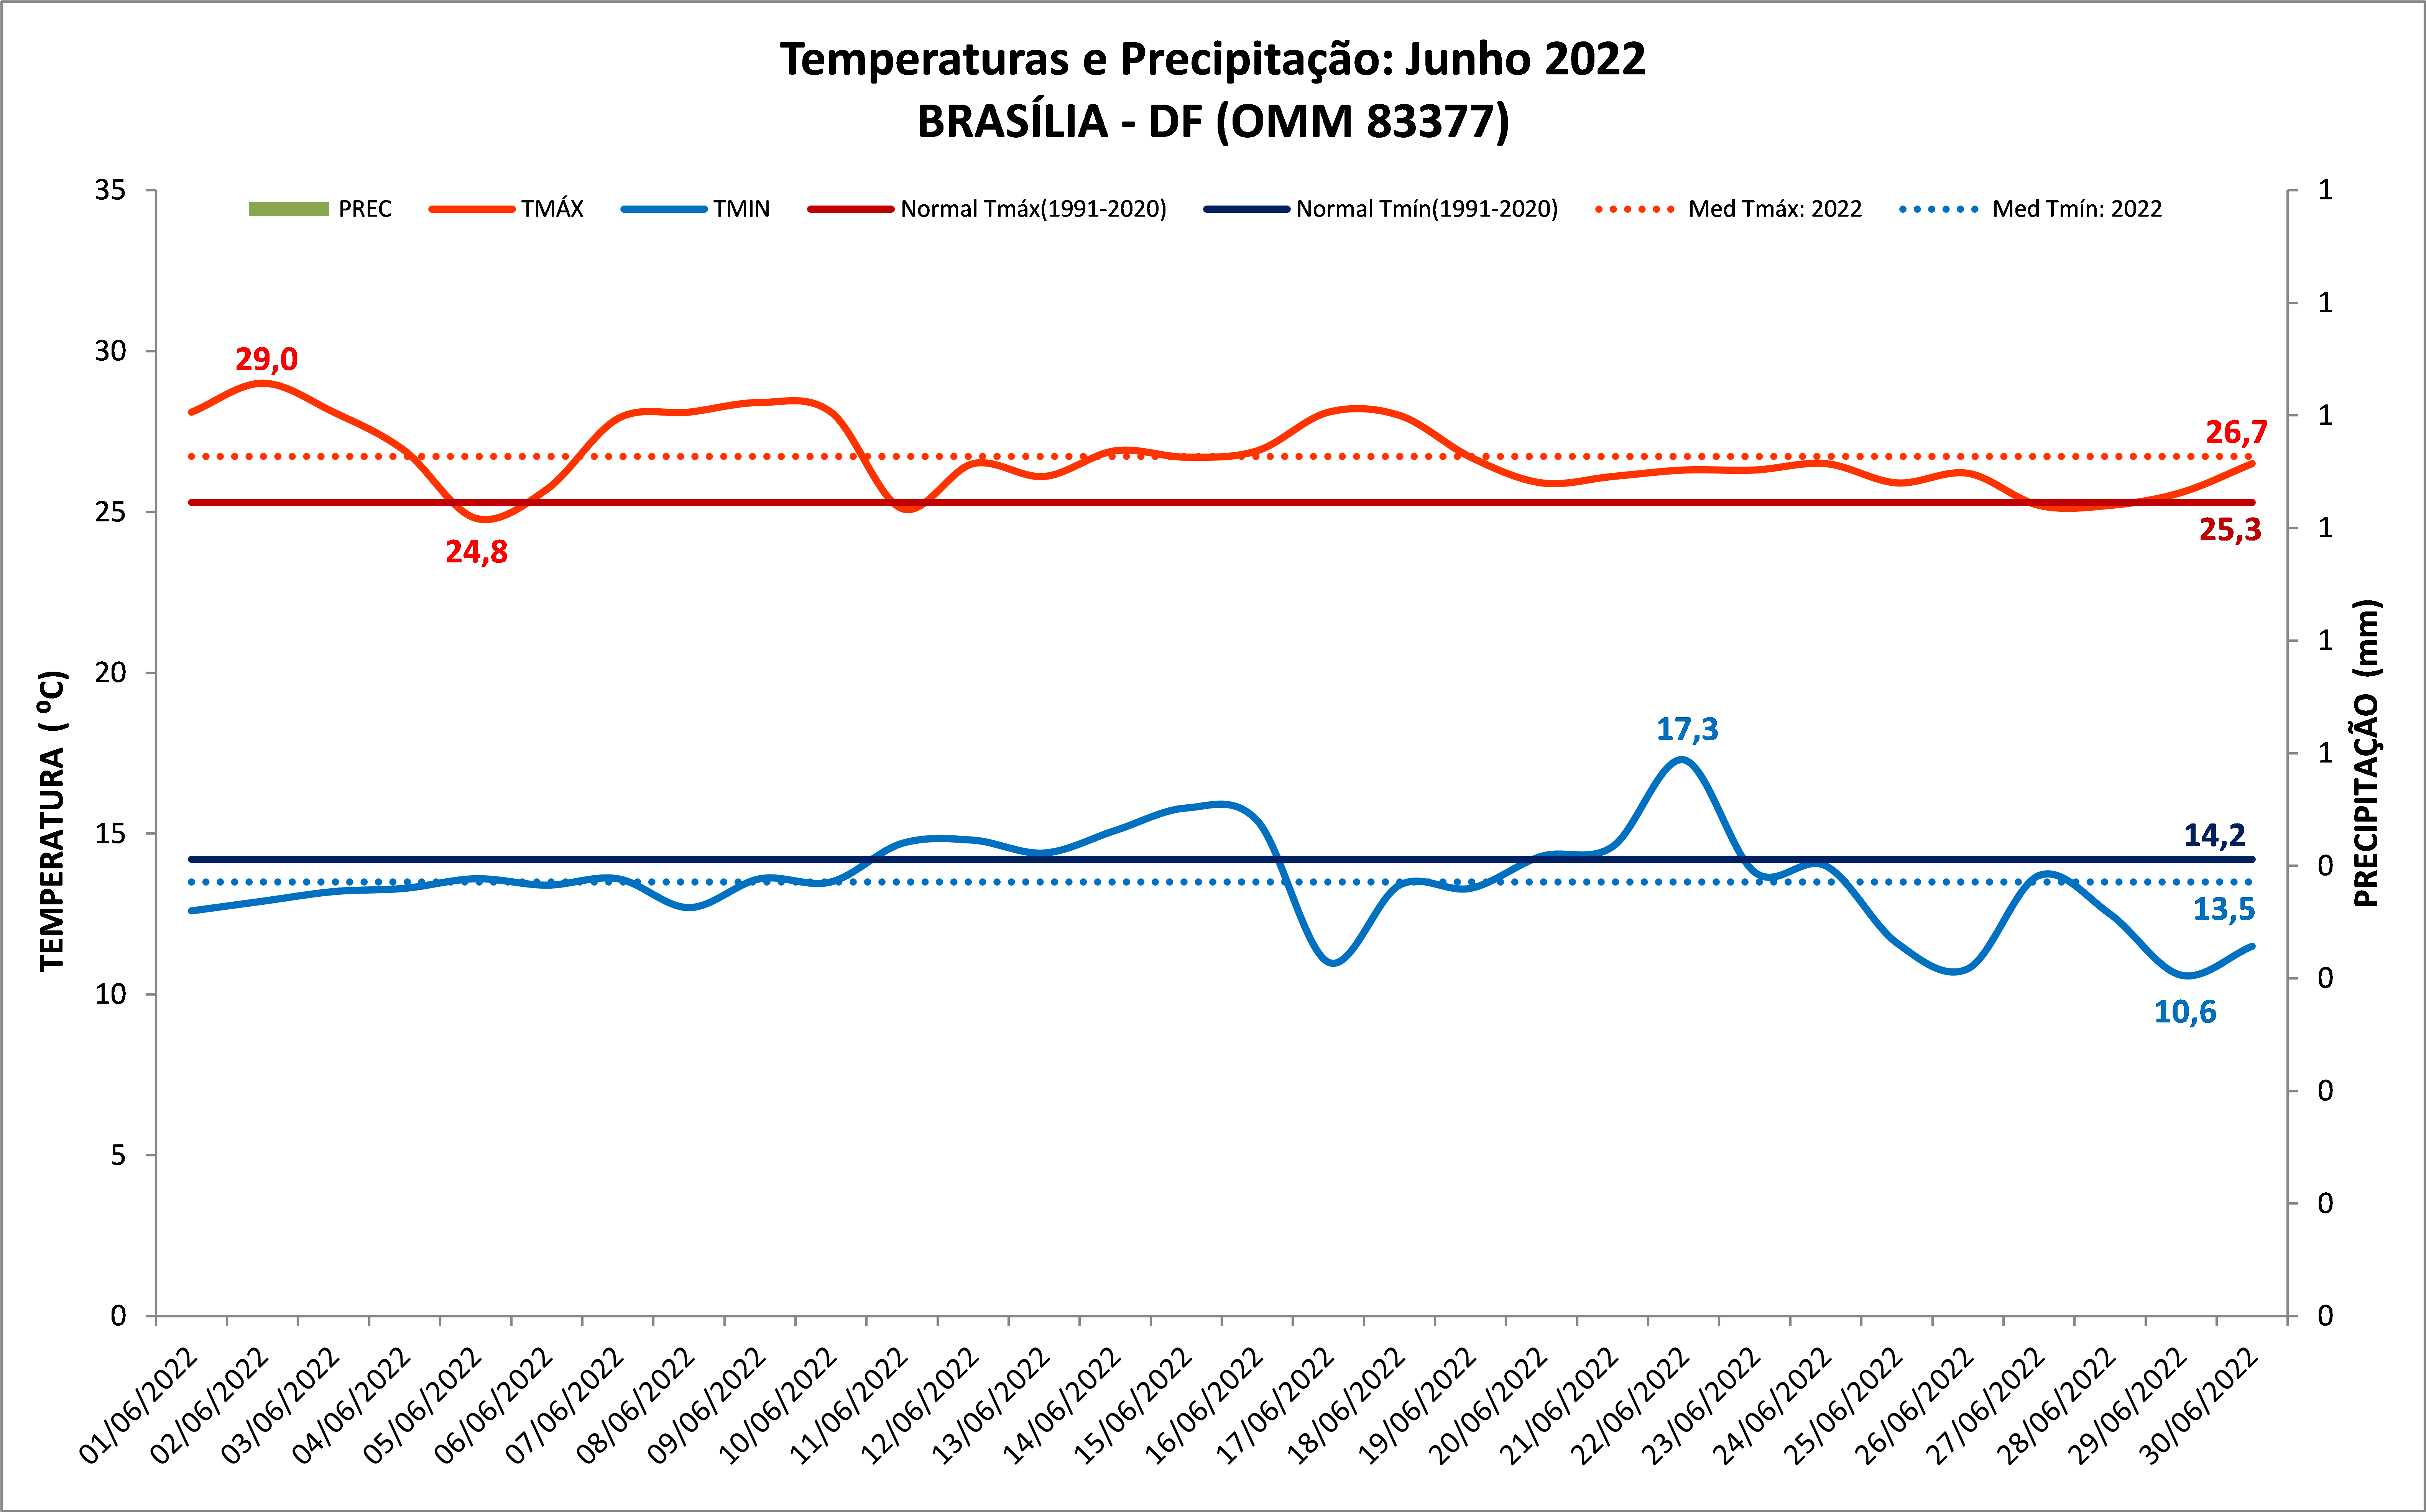 Balanço das condições do tempo do mês de junho de 2022 nas capitais: Brasília (DF), Goiânia (GO), Cuiabá (MT), Palmas (TO) e Porto Velho (RO).